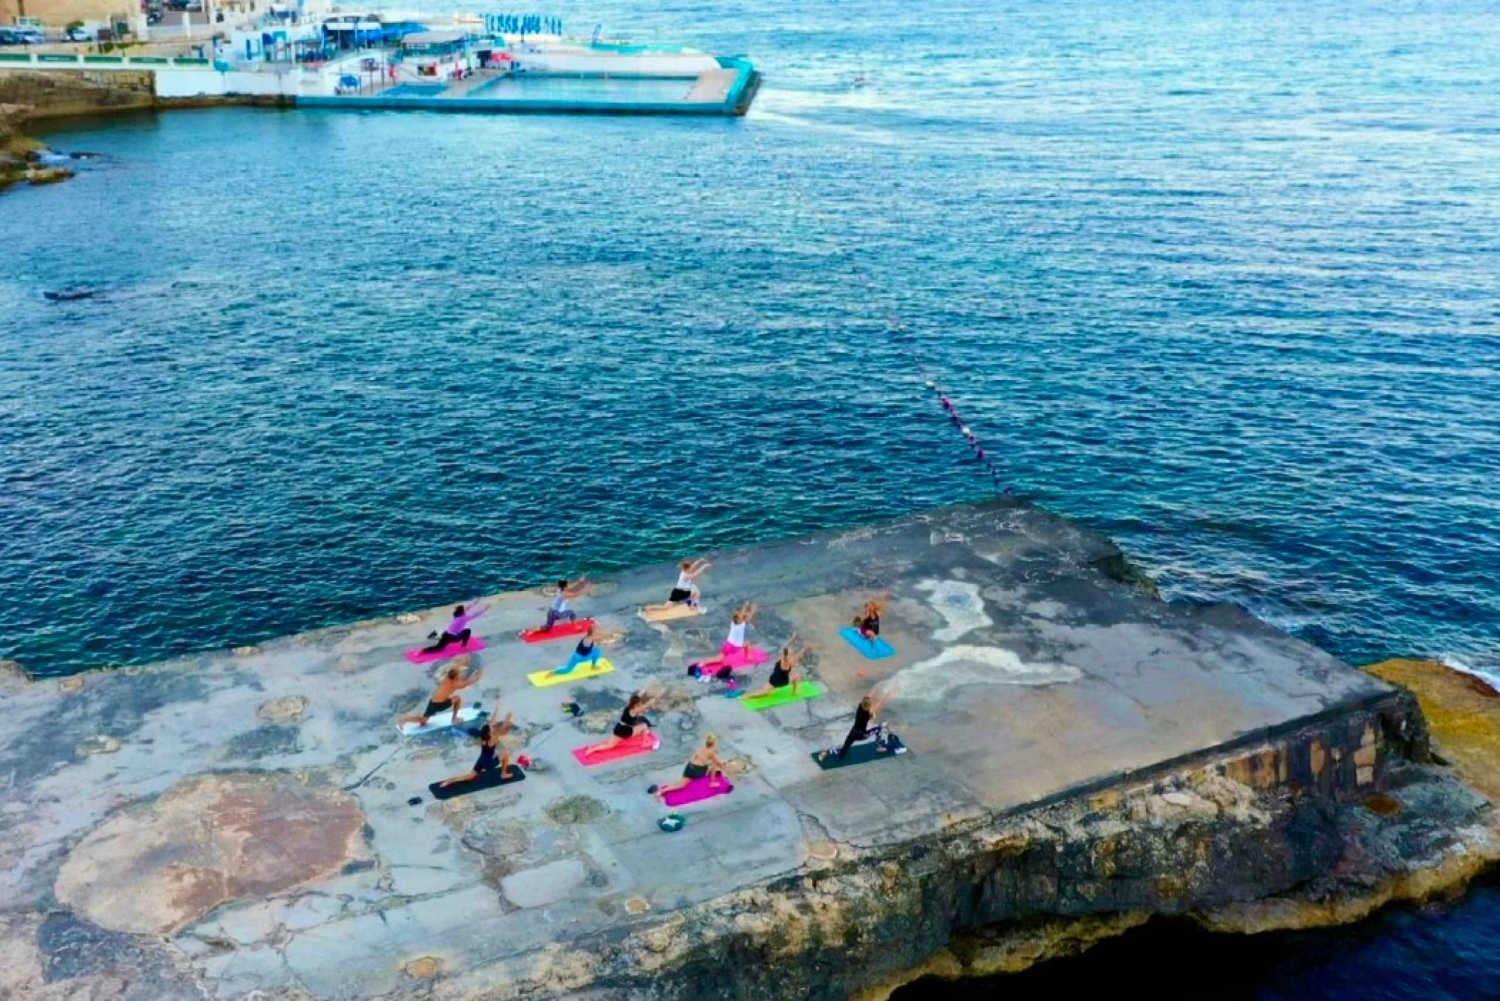 Beach Yoga Class and Swimming - Sliema